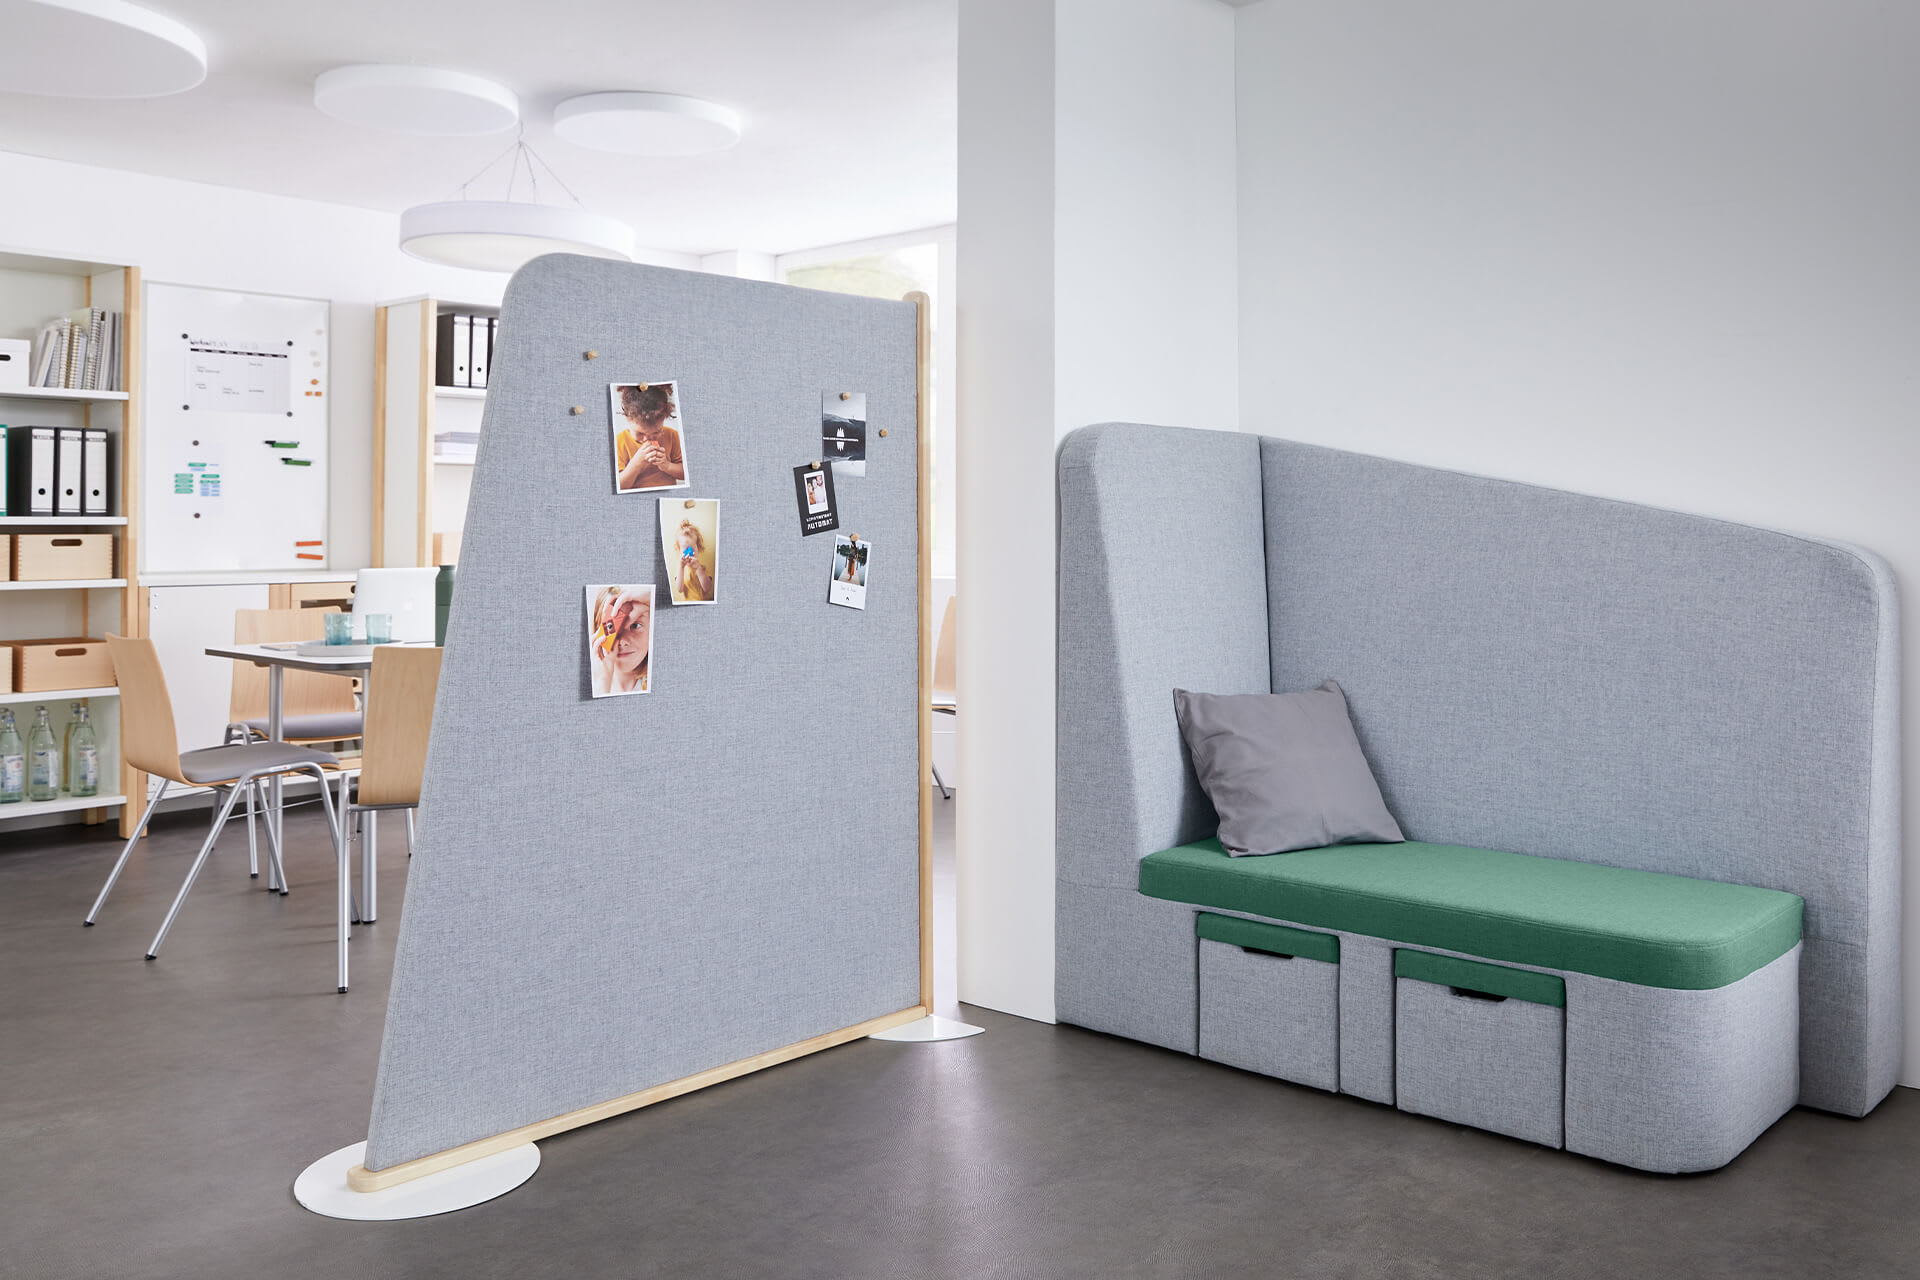  Lernraum | Raumteiler & Präsentationen | Grauer Raumteiler trennt Arbeitsbereich - Tisch mit Stühlen und Schränke, mit Sofa-Ecke in grau und grünem Sitzpolster.